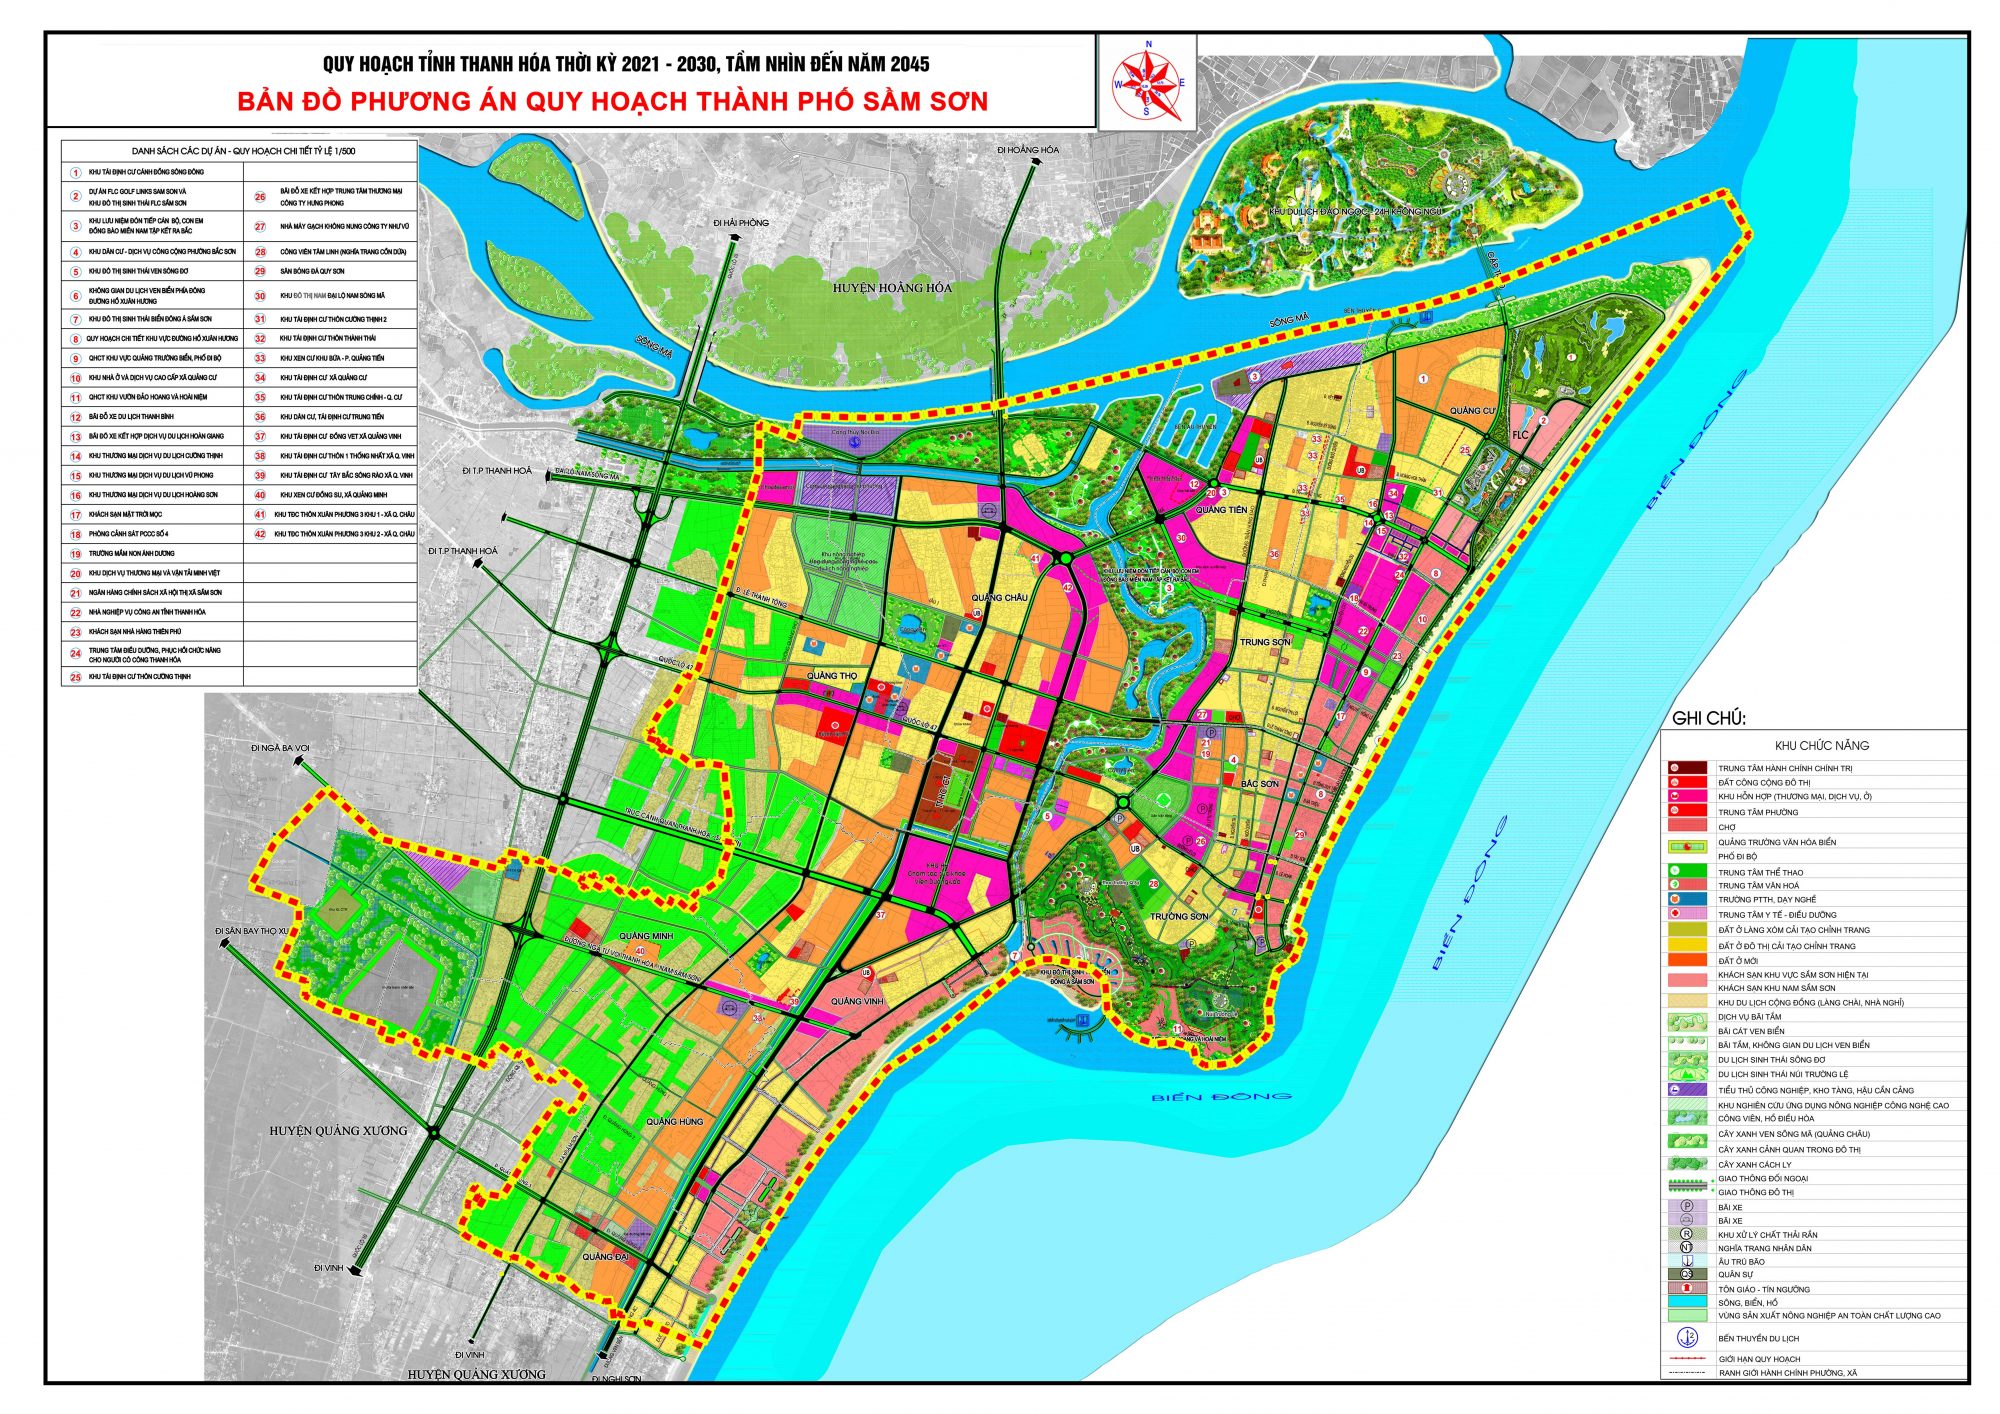 Bản đồ quy hoạch thành phố Sầm Sơn, tỉnh Thanh Hóa đến năm 2030